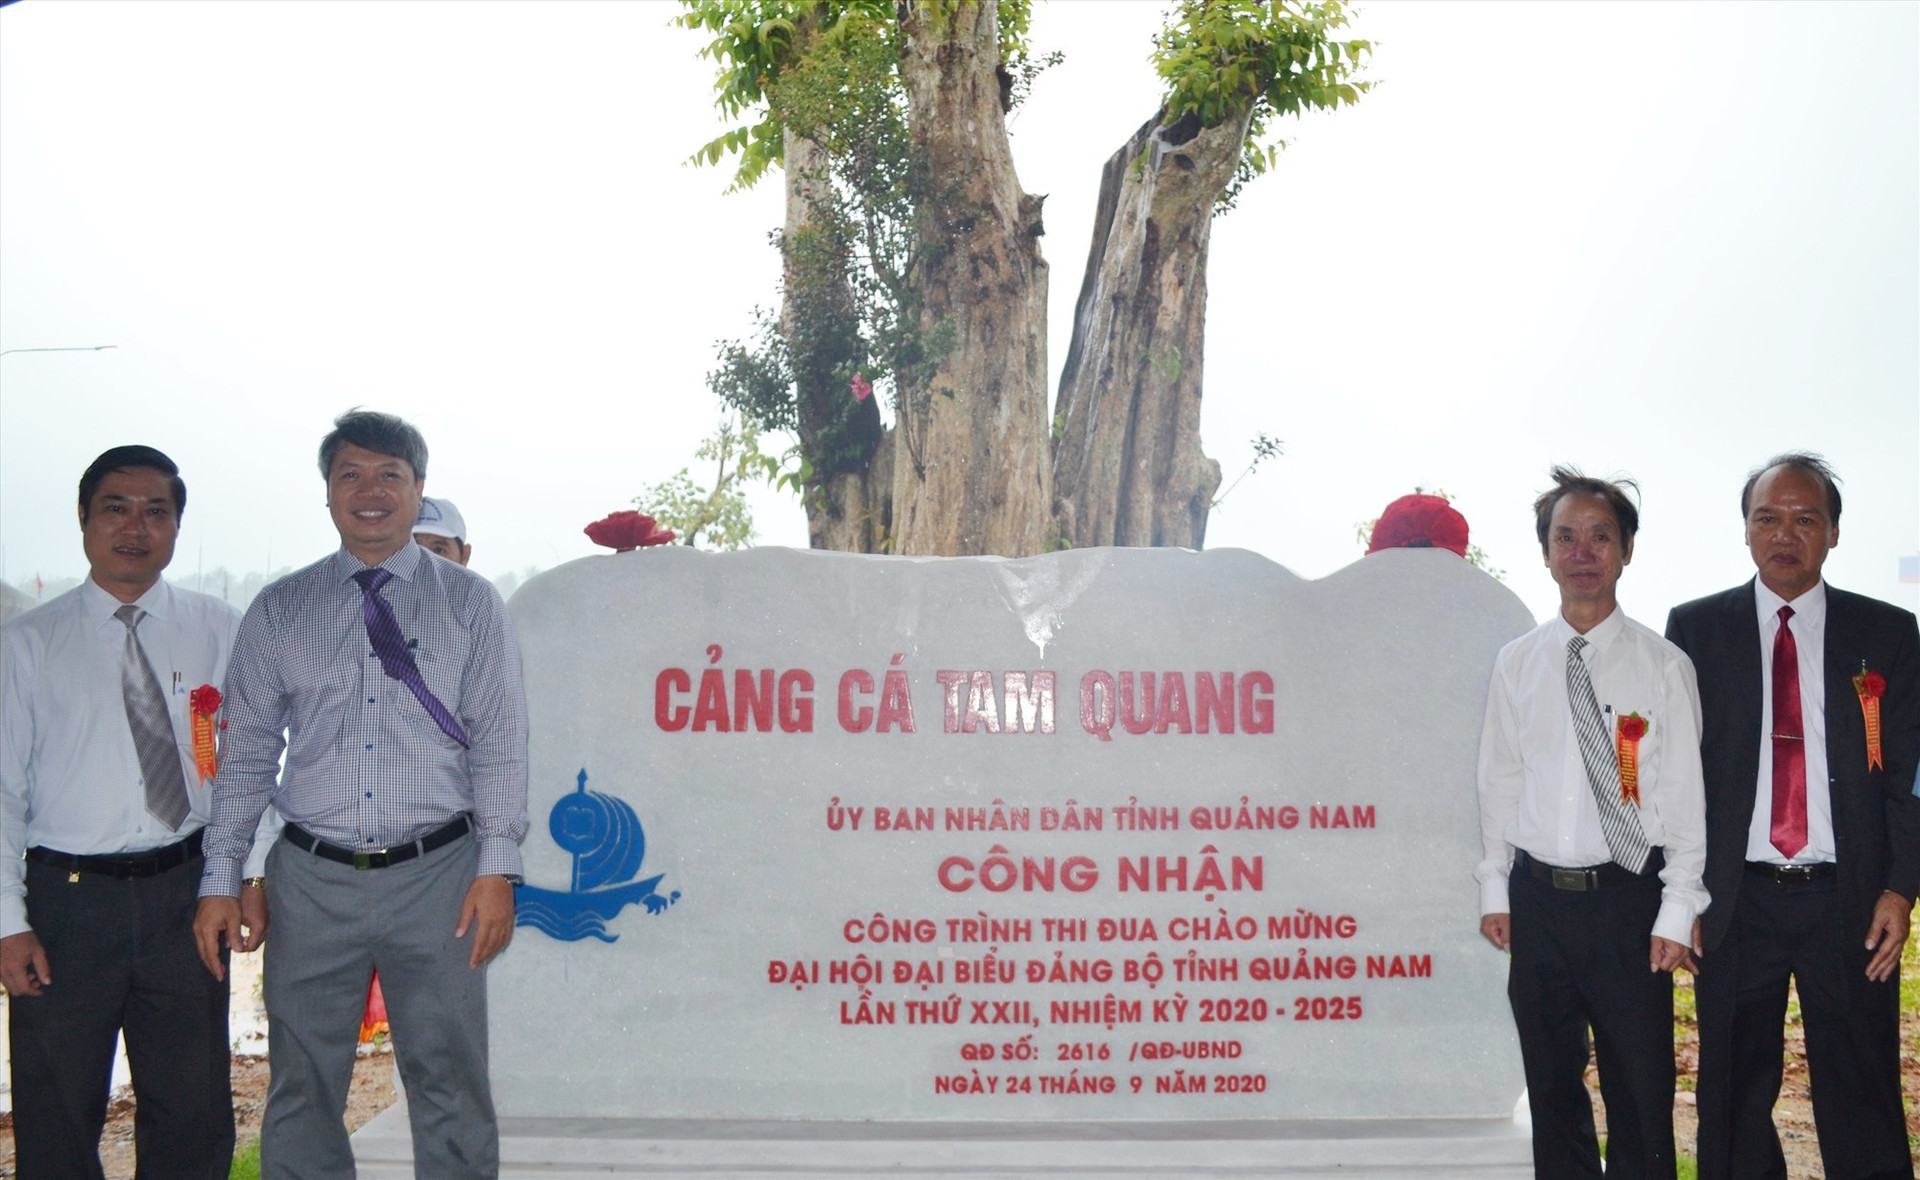 Cảng cá Tam Quang được gắn biển công trình thi đua chào mừng Đại hội Đảng bộ tỉnh lần thứ XXII. Ảnh: VIỆT NGUYỄN